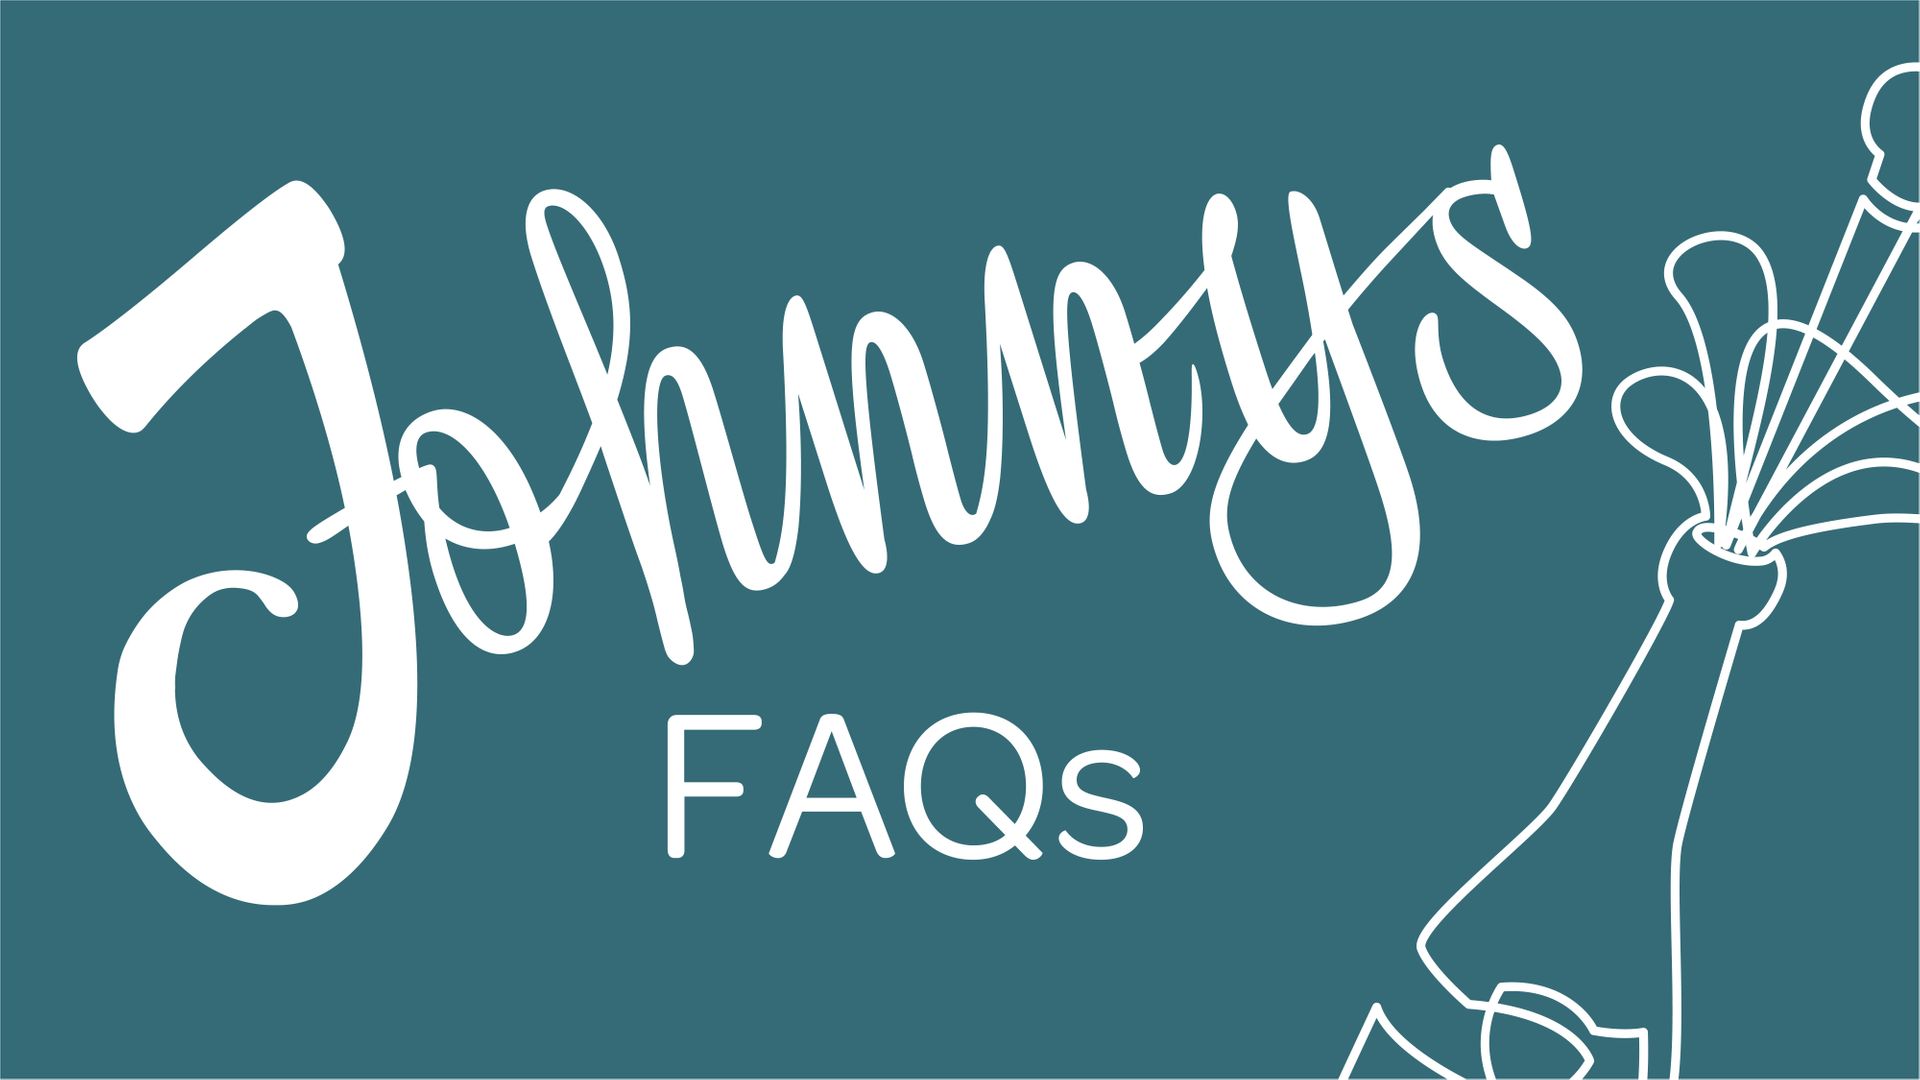 Johnny beantwortet Ihre Fragen - FAQ